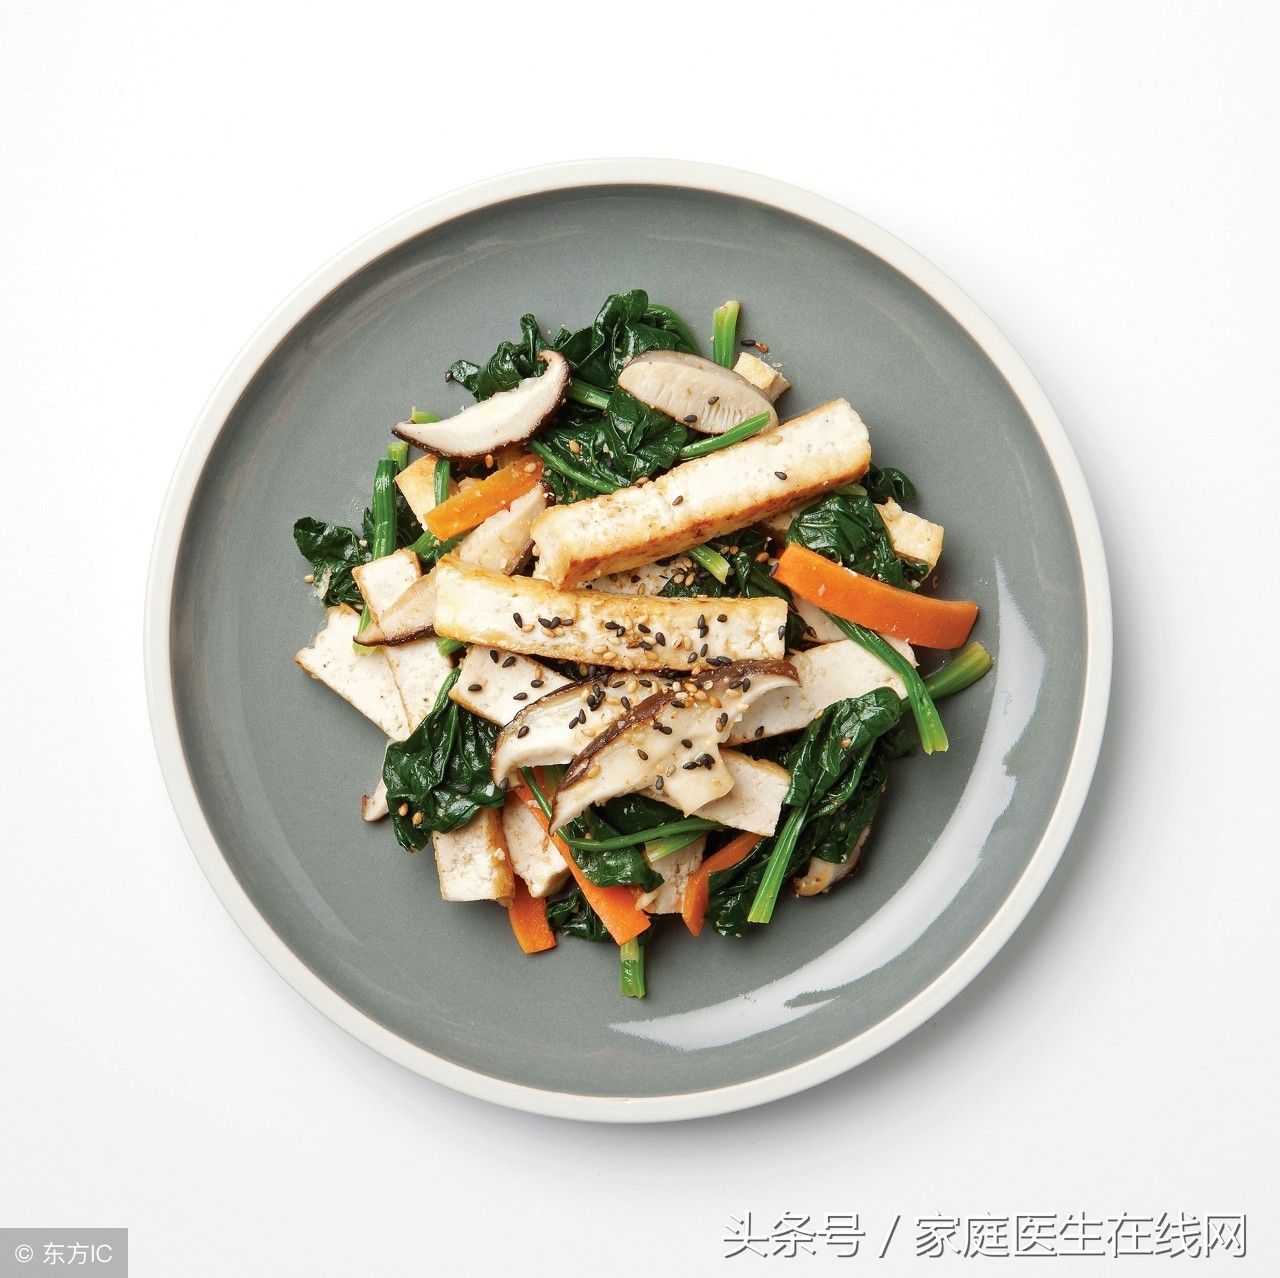 菠菜炒豆腐怎么做好吃?菠菜和老豆腐的做法